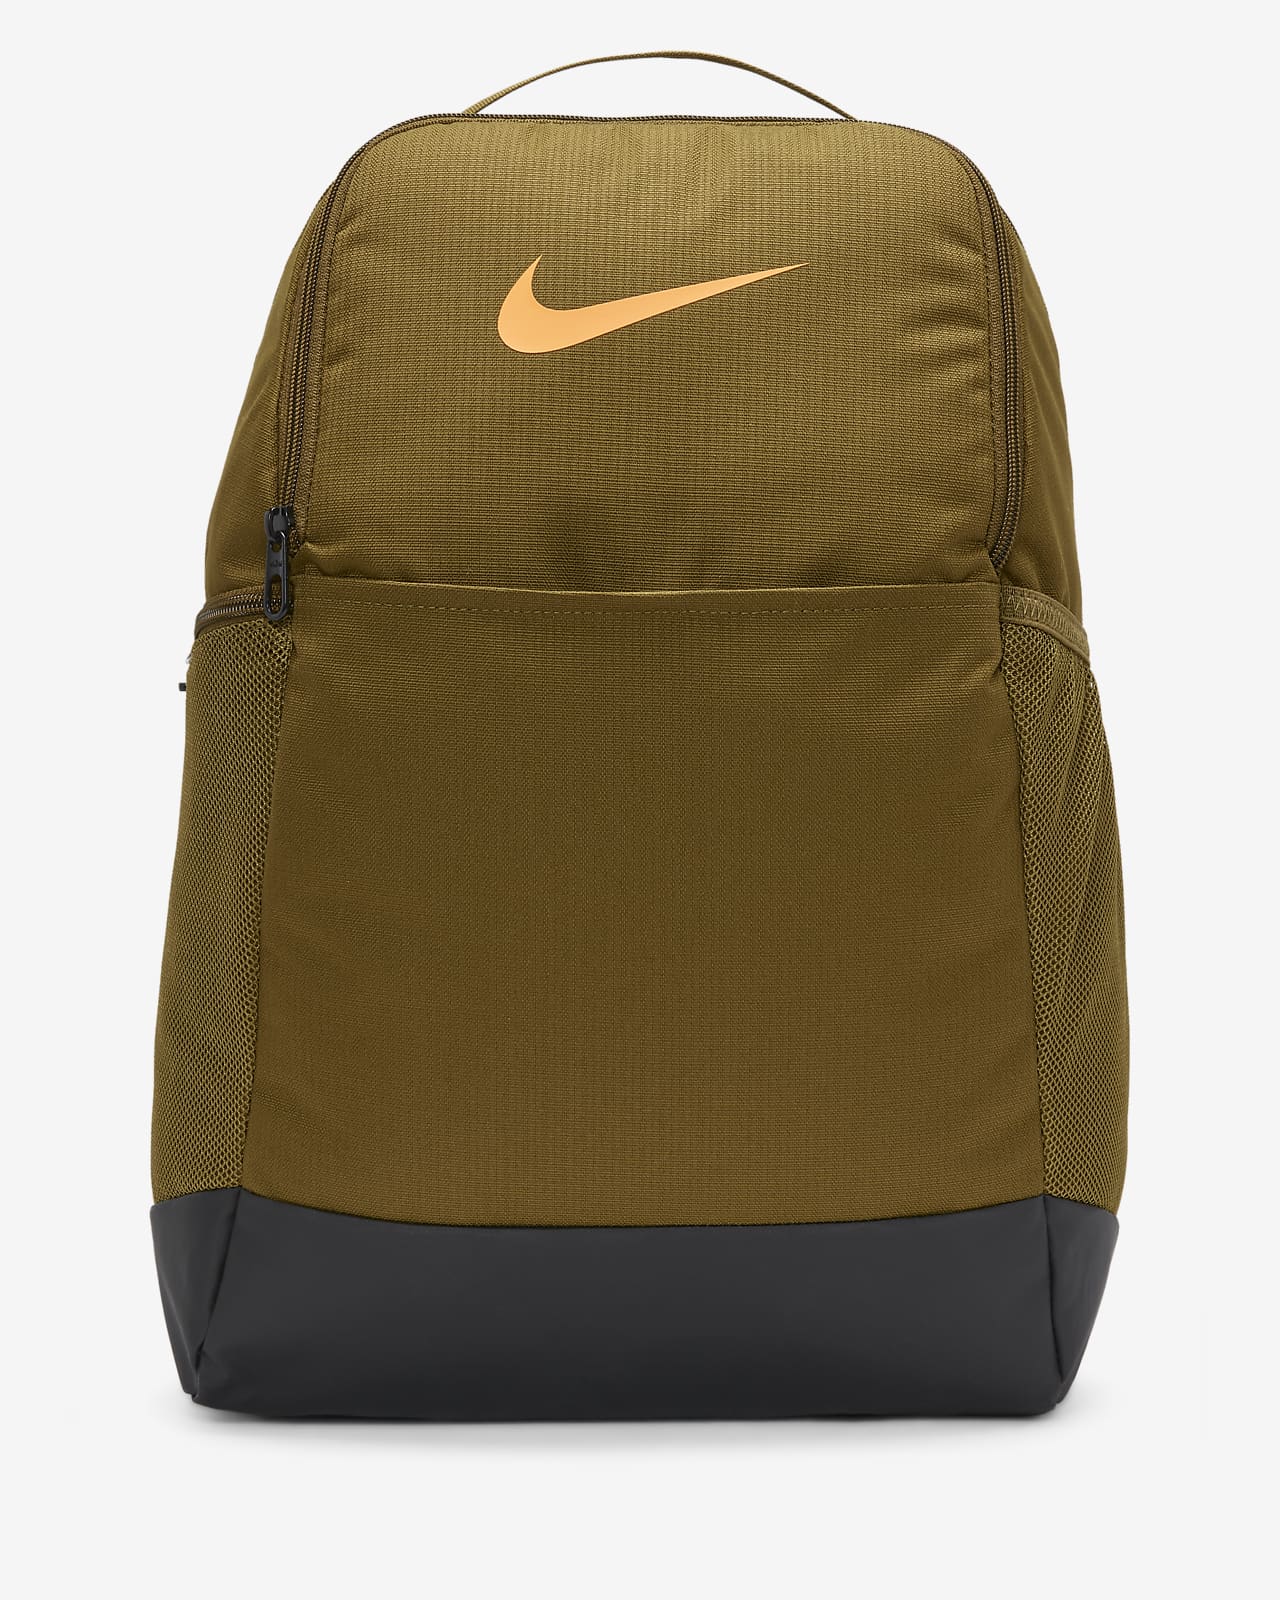 nike mesh backpack orange